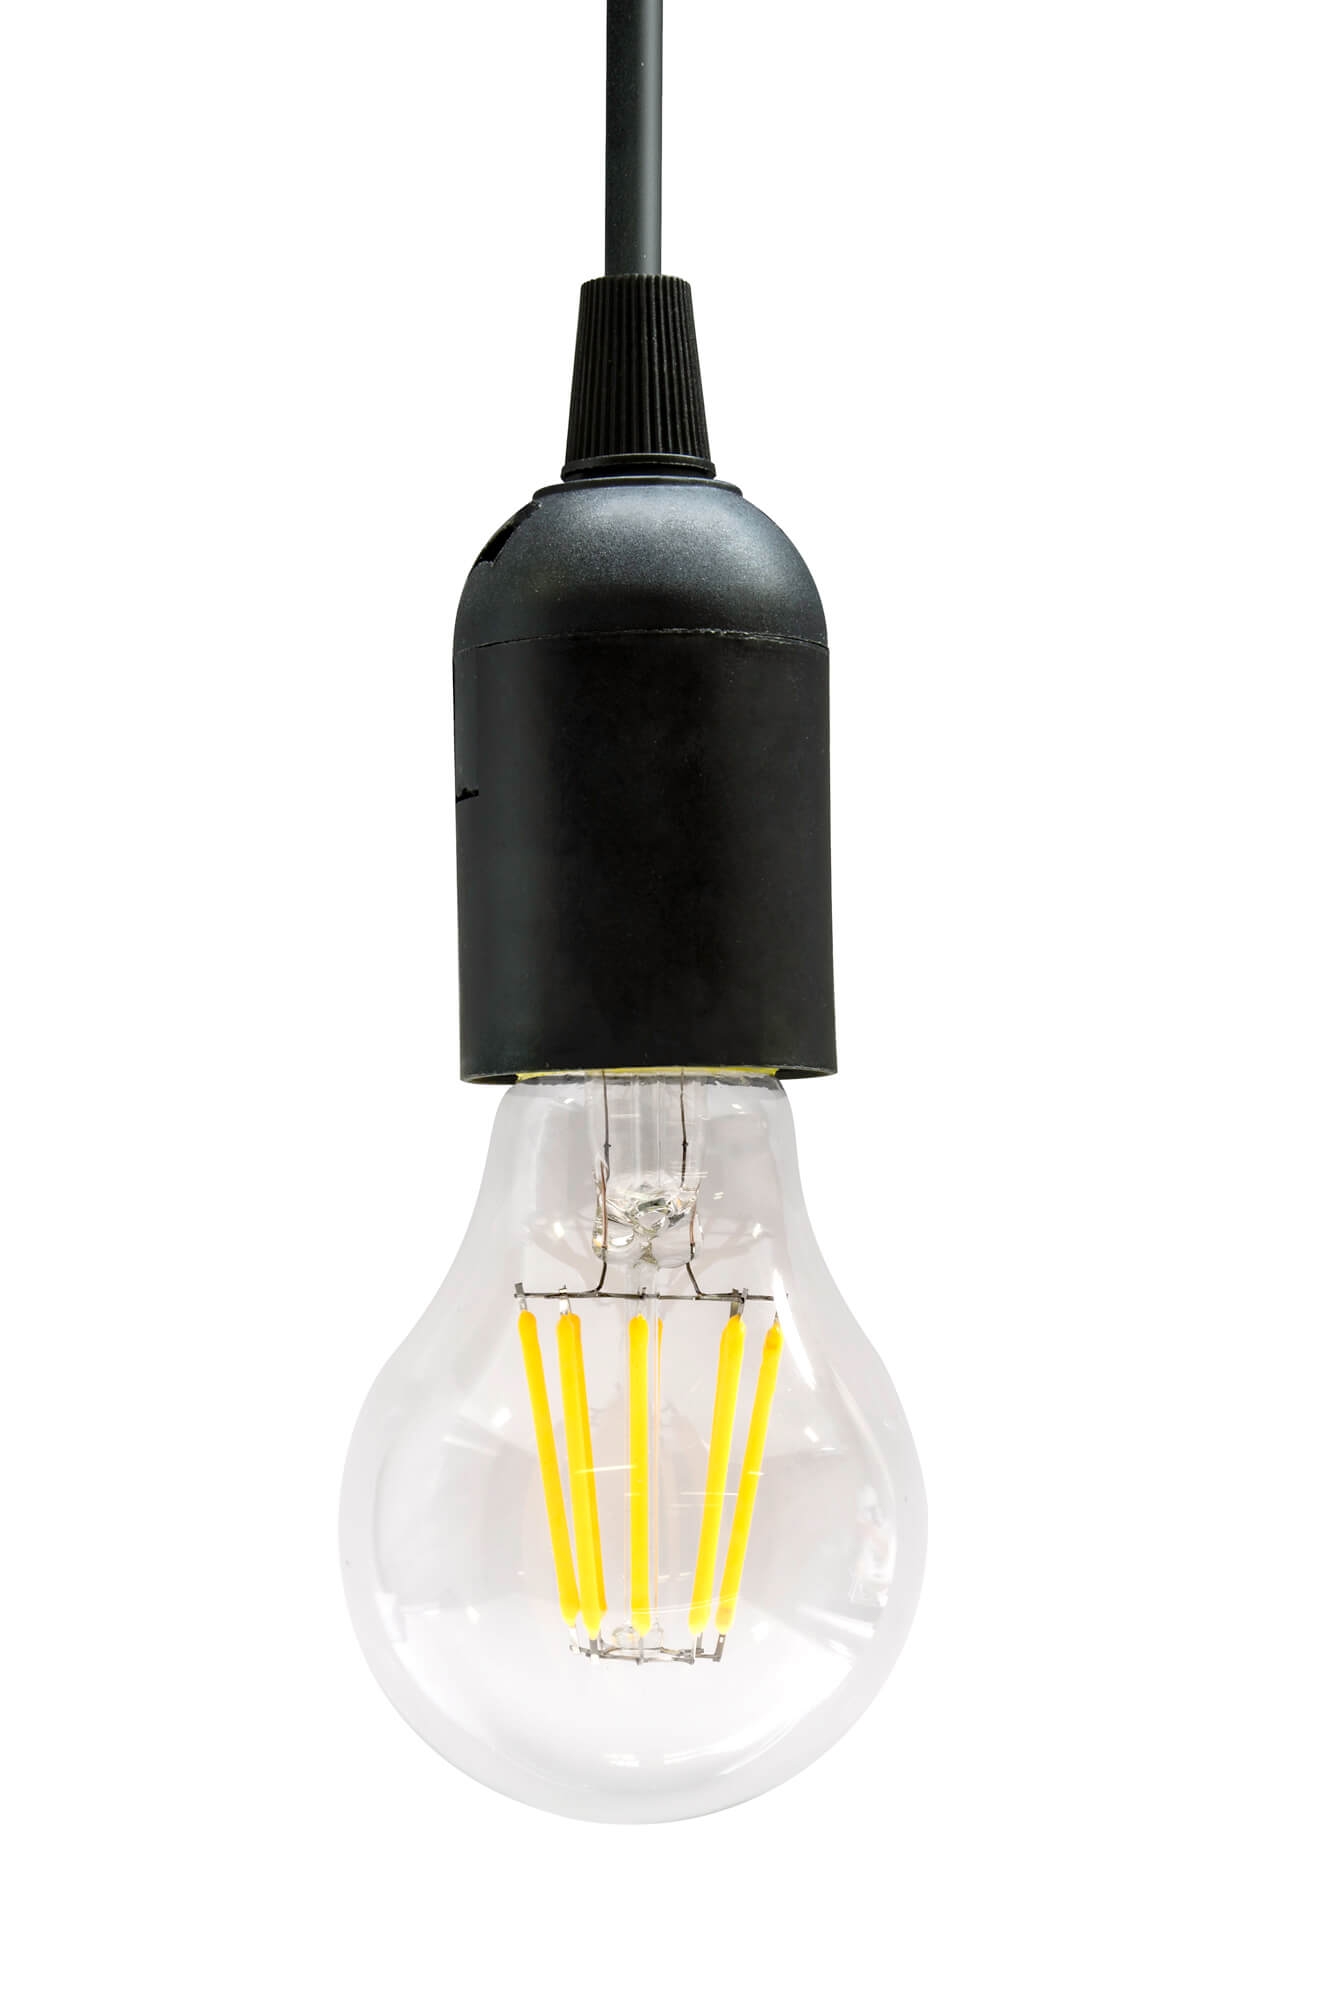 /8/w/8w-led-filament-lampe-e27-a60-mit-fassung.jpg